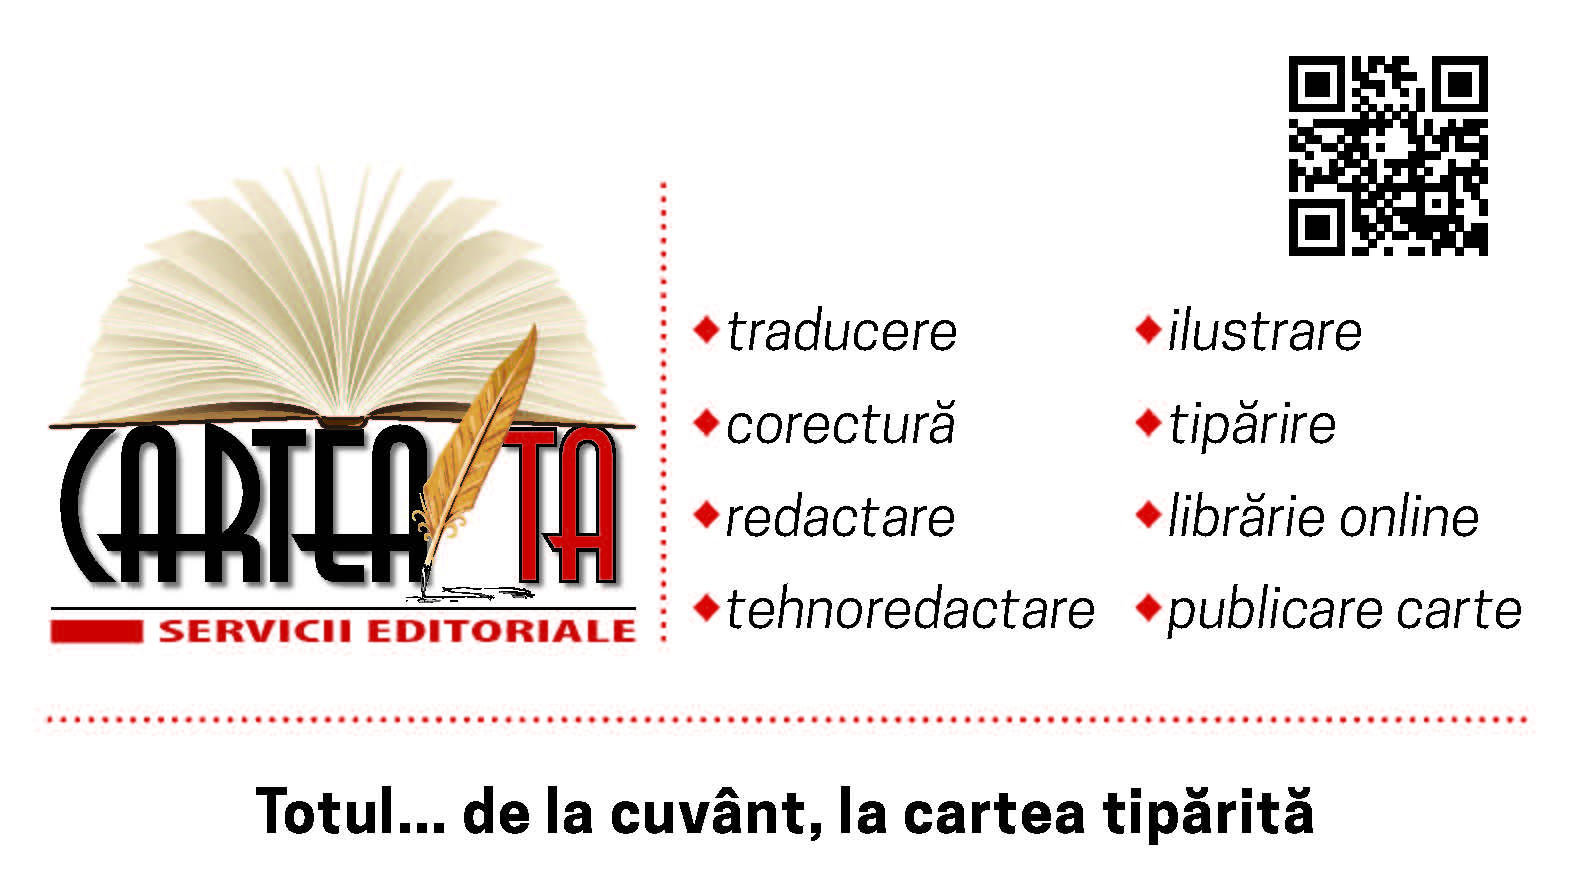 e-carteata.ro servicii editoriale, corectura, editare, traducere, ilustrare, tiparire carte